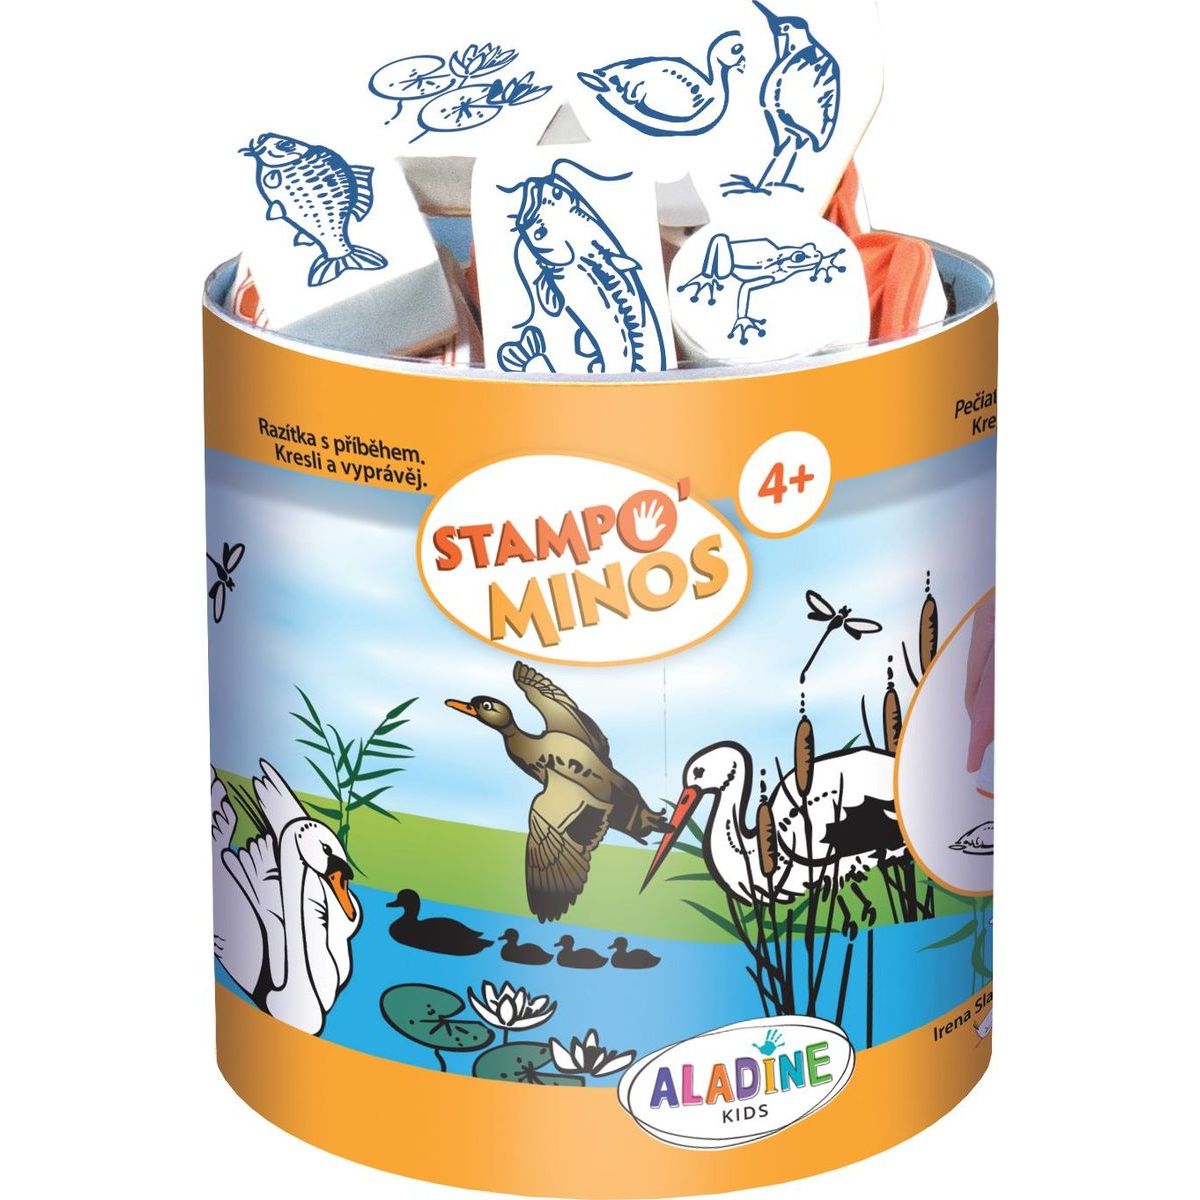 Dětská razítka s příběhem Aladine Stampo Minos, 36 ks U vody